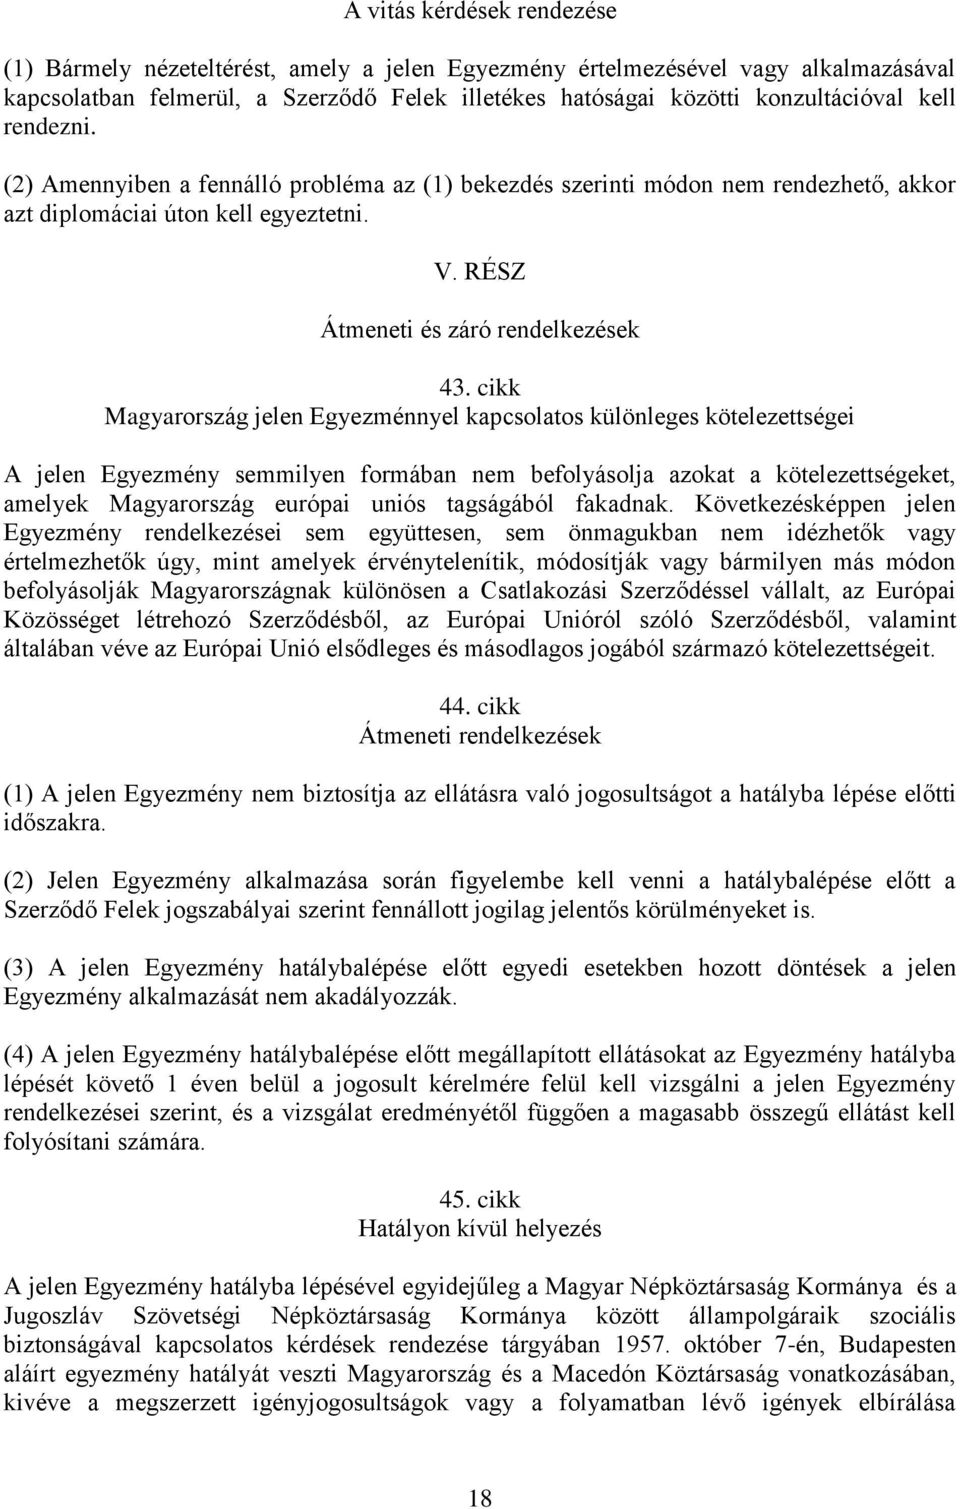 cikk Magyarország jelen Egyezménnyel kapcsolatos különleges kötelezettségei A jelen Egyezmény semmilyen formában nem befolyásolja azokat a kötelezettségeket, amelyek Magyarország európai uniós